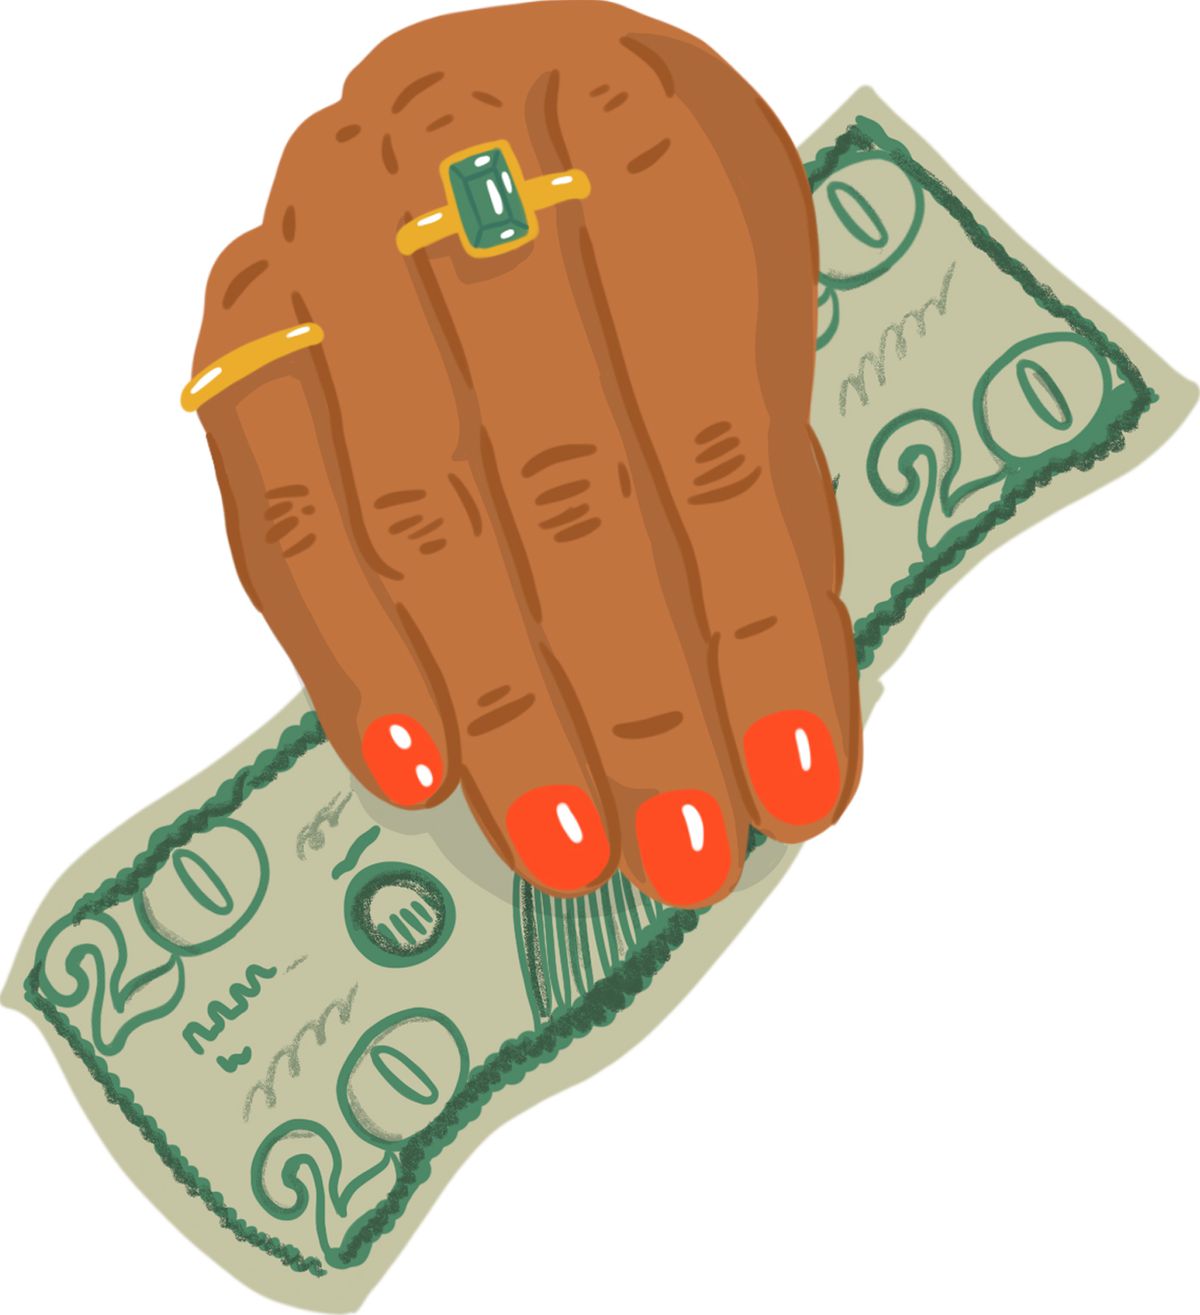 A women’s hand holding a $20 bill